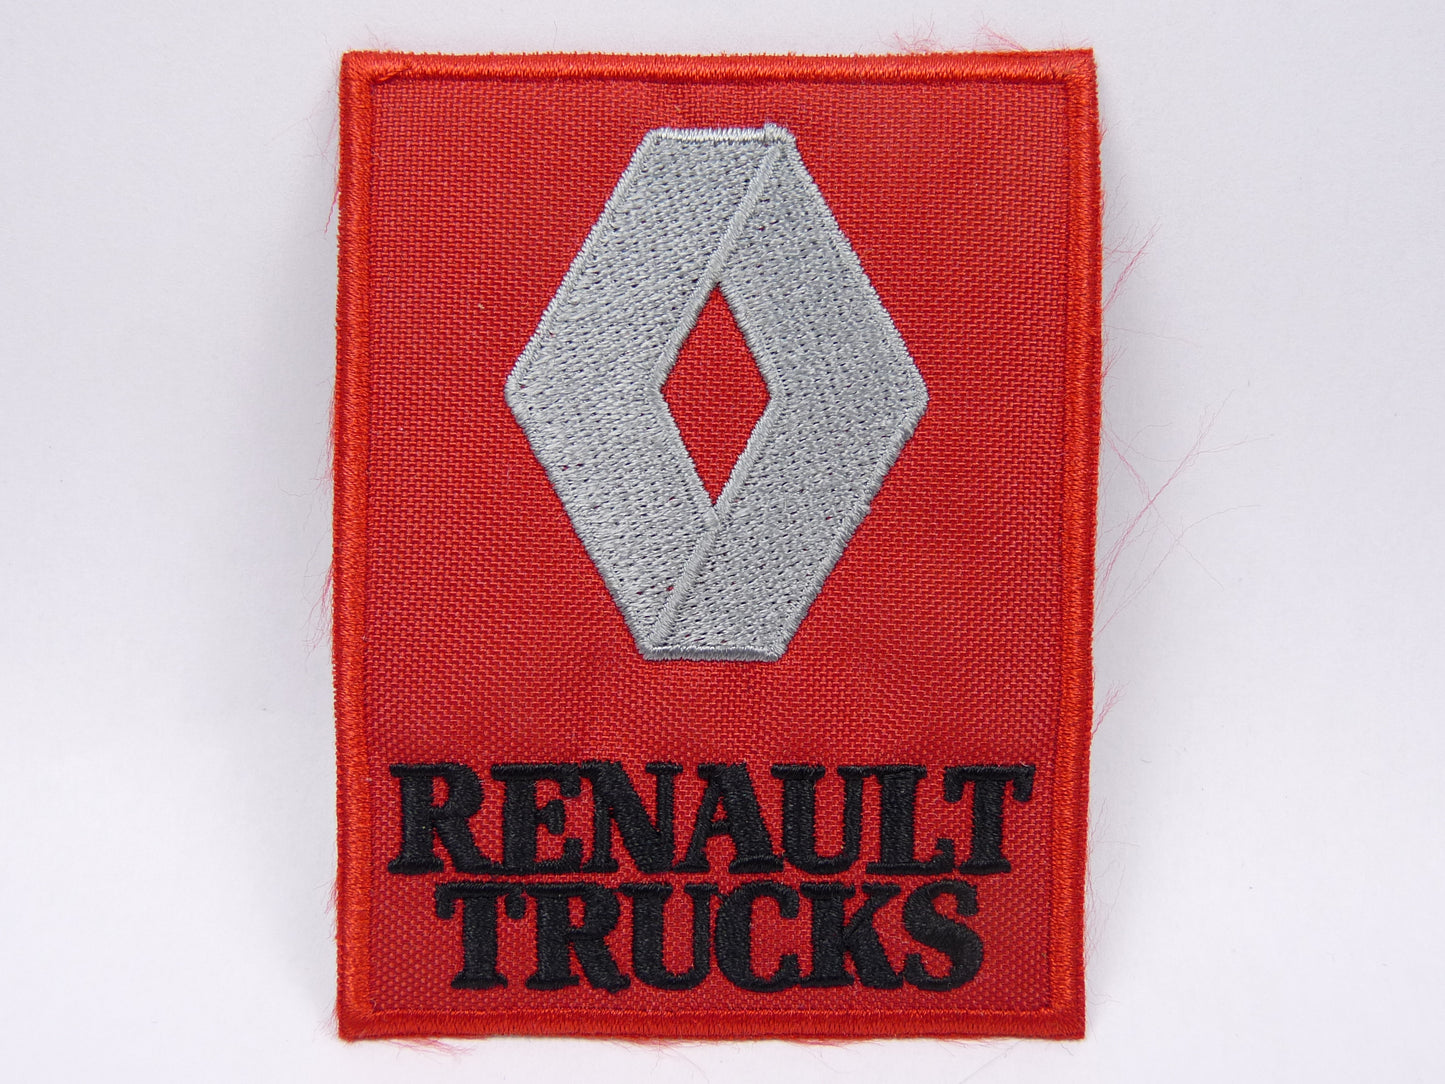 PTC119 Patch brodé thermocollé : logo Renault trucks largeur environ 6.3 cm hauteur environ 8.4 cm